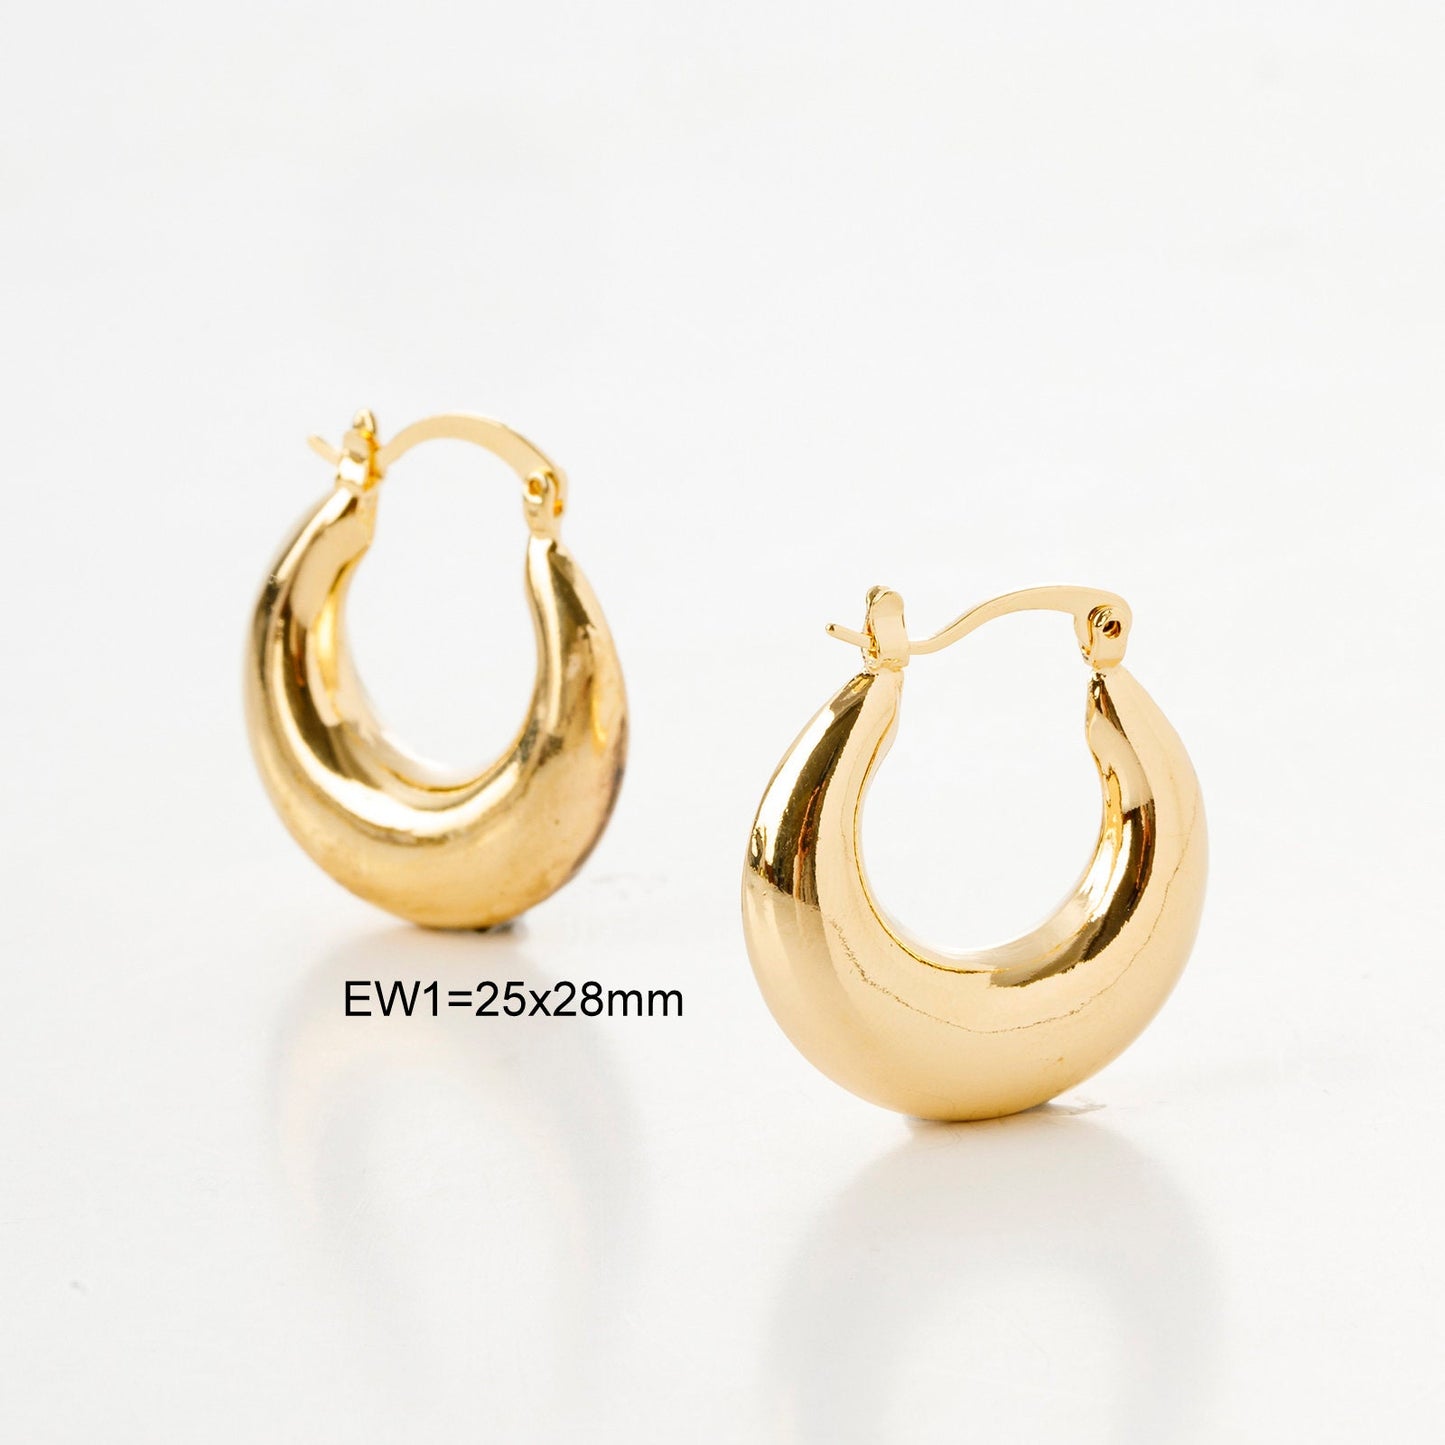 Moon Round Oval Hoop Earring Gold Filled EP 18K , Jewelry Making 5 designs Hoop Earrings